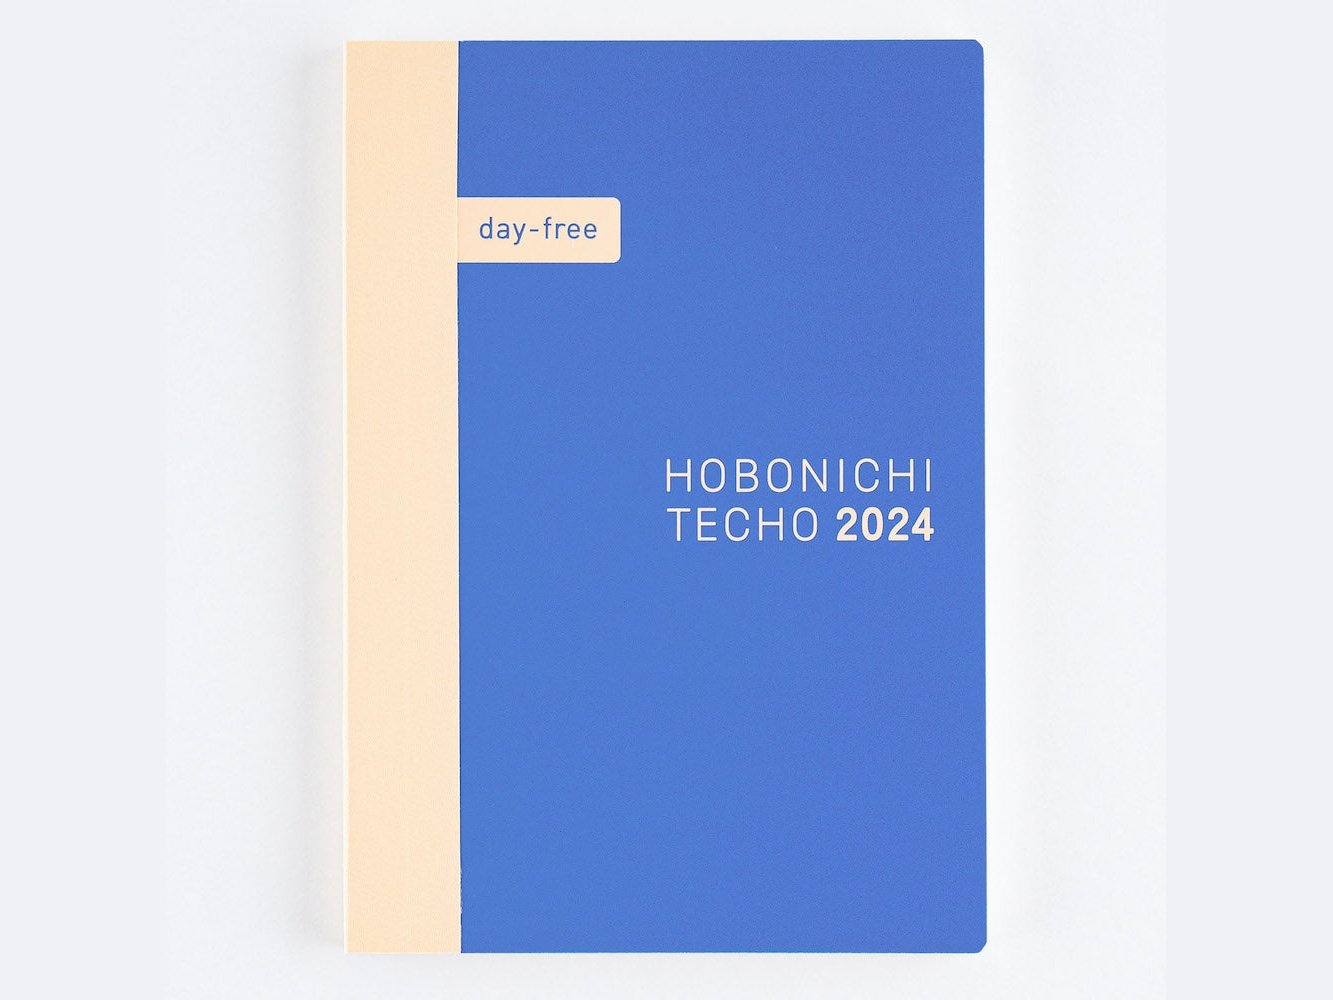 Hobonichi Techo Day-Free 2024 A6 Size (Japanese)